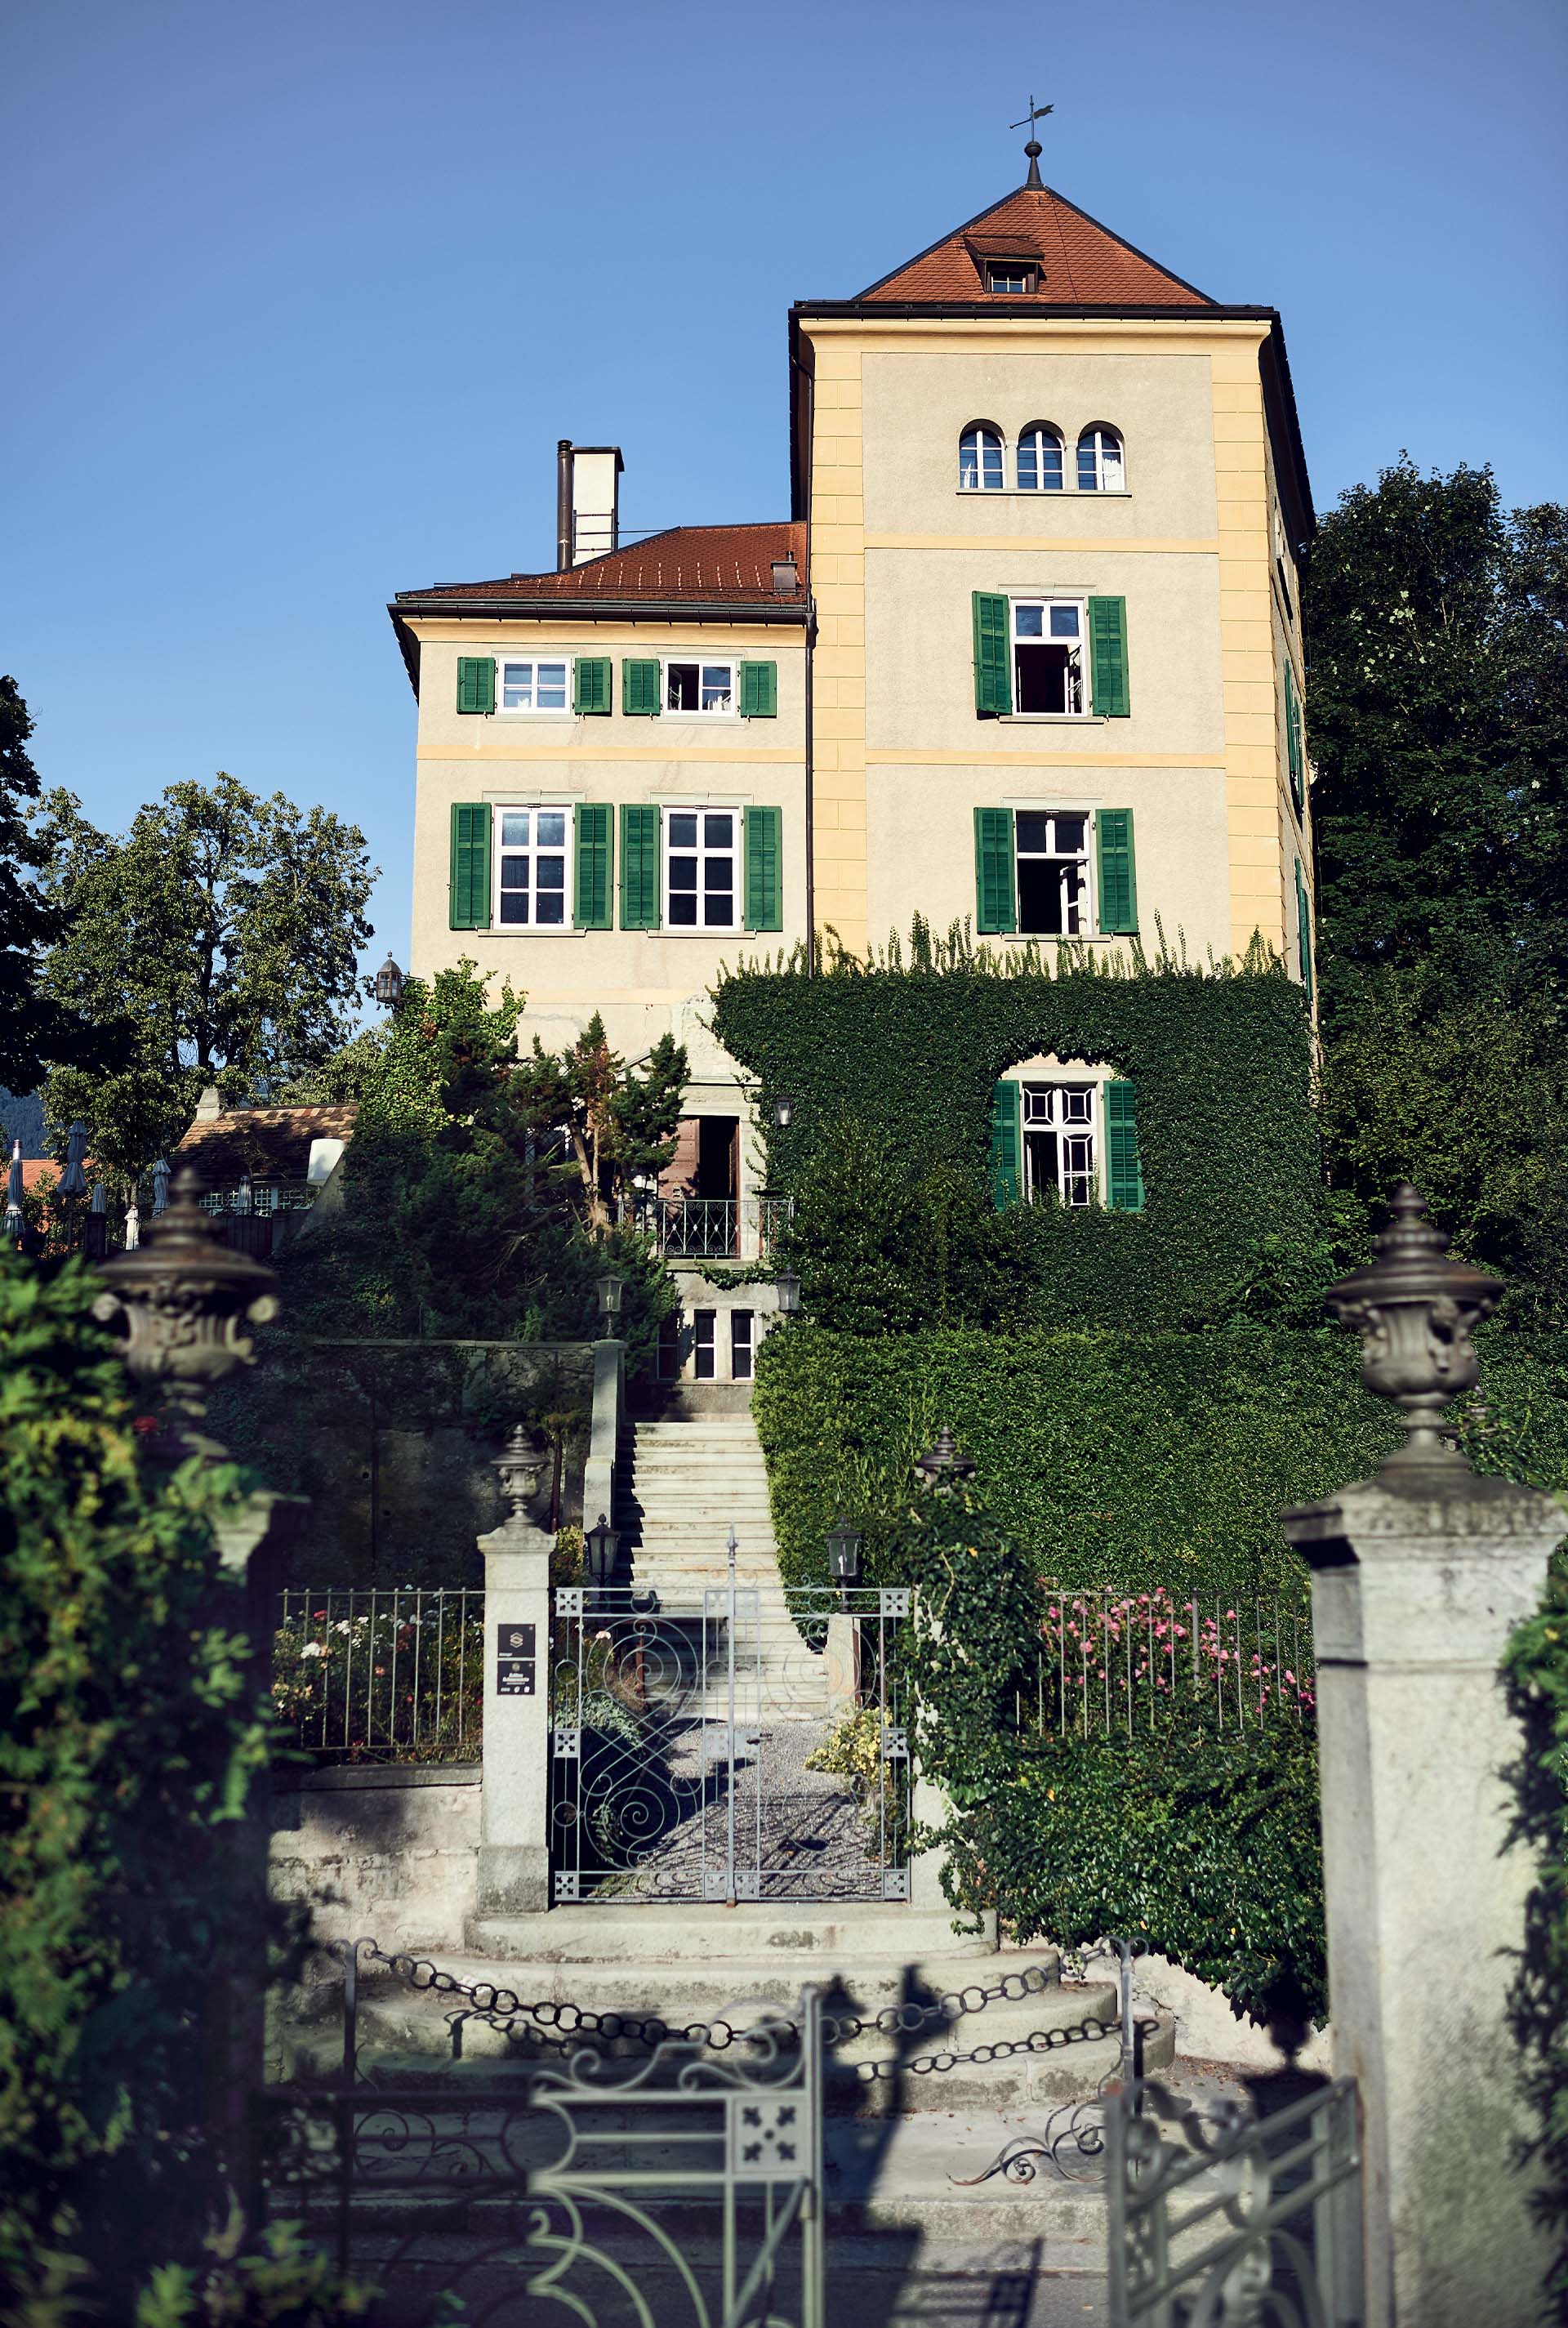 Schloss Schauenstein manor house.